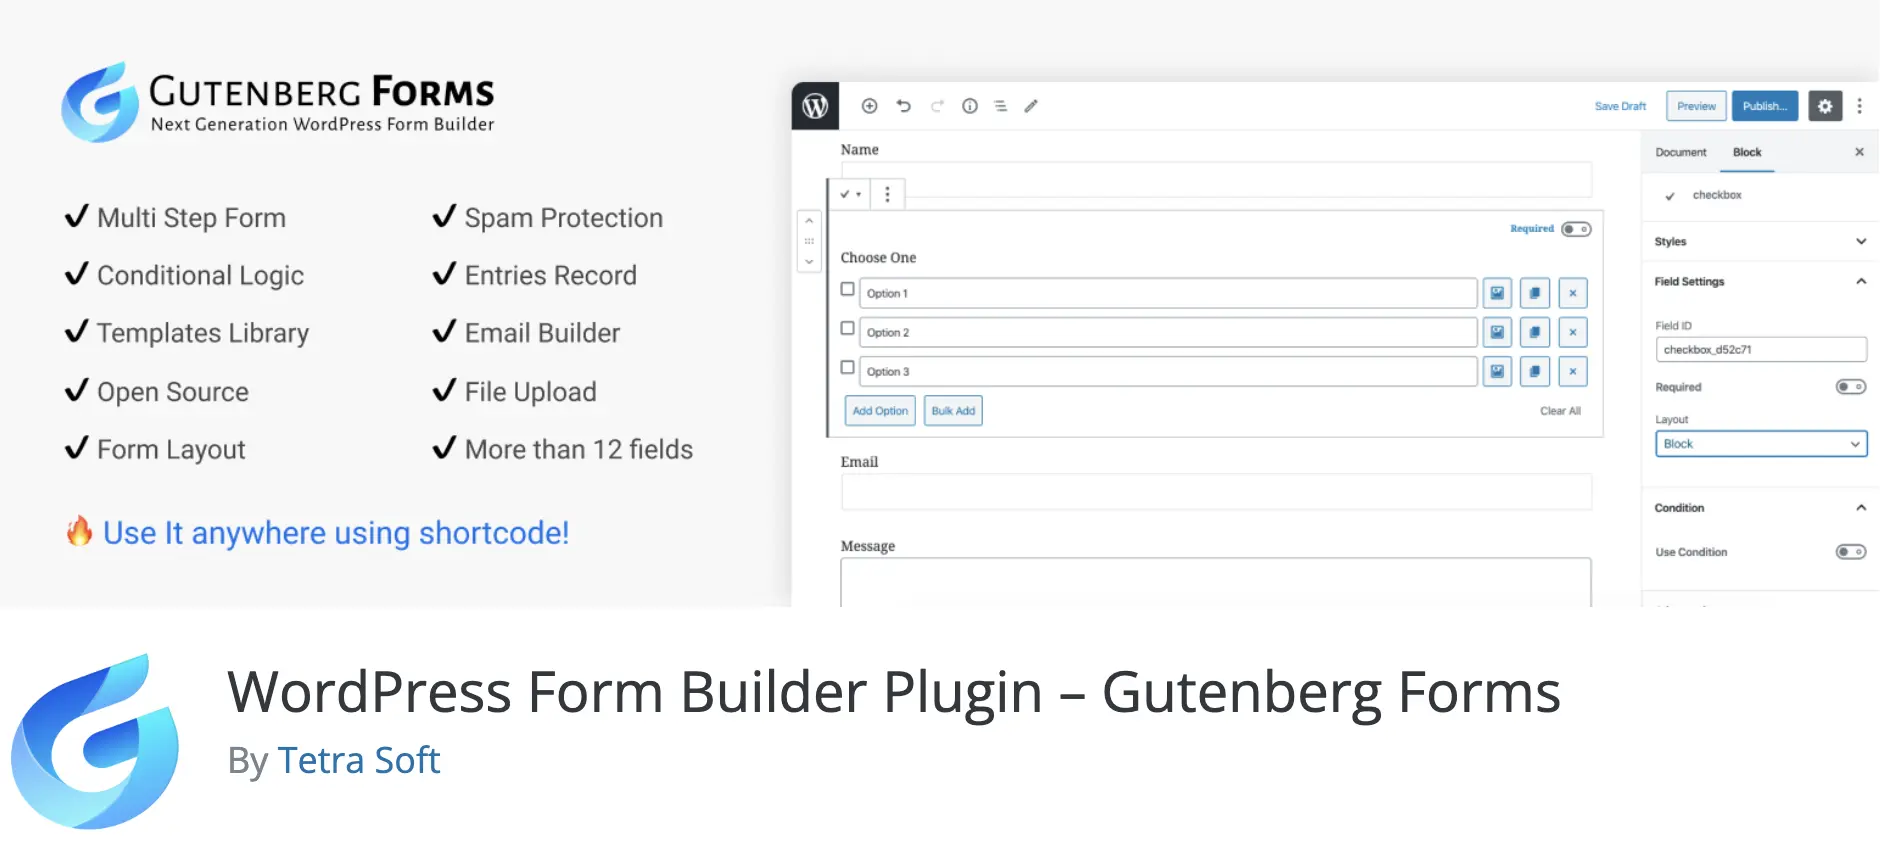 WordPress Form Builder Plugin - Gutenberg Forms